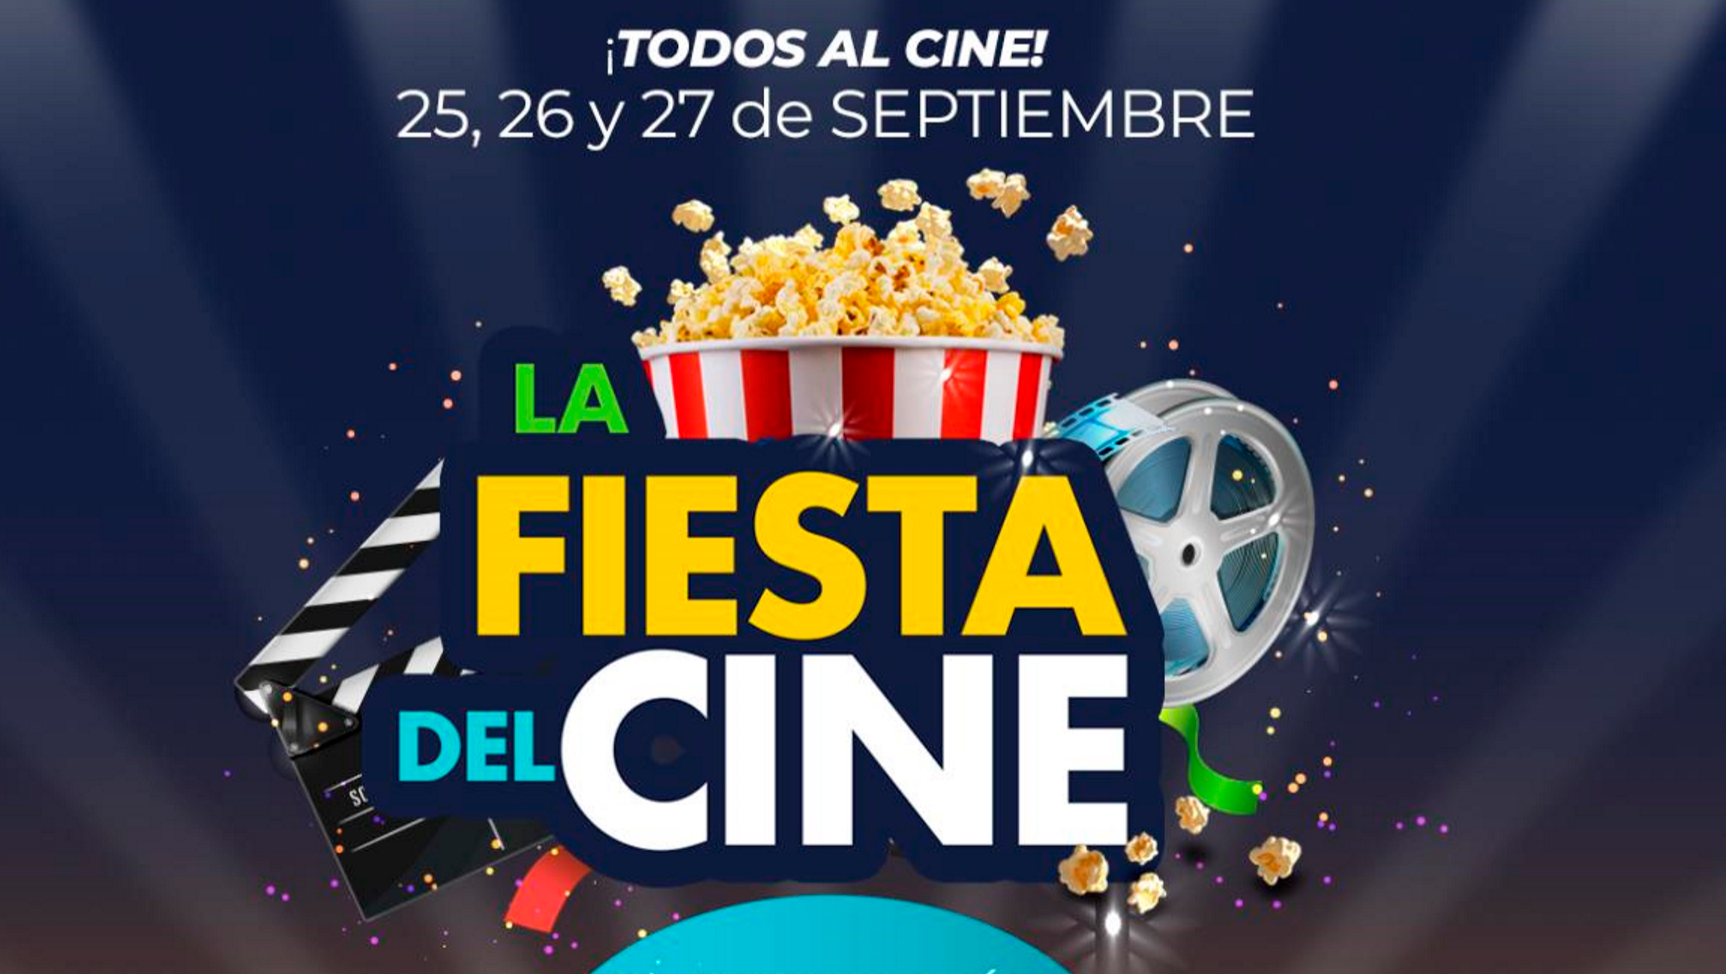 Hoy comienza “La Fiesta del Cine”, 3 días con peliculas a 2 lukitas